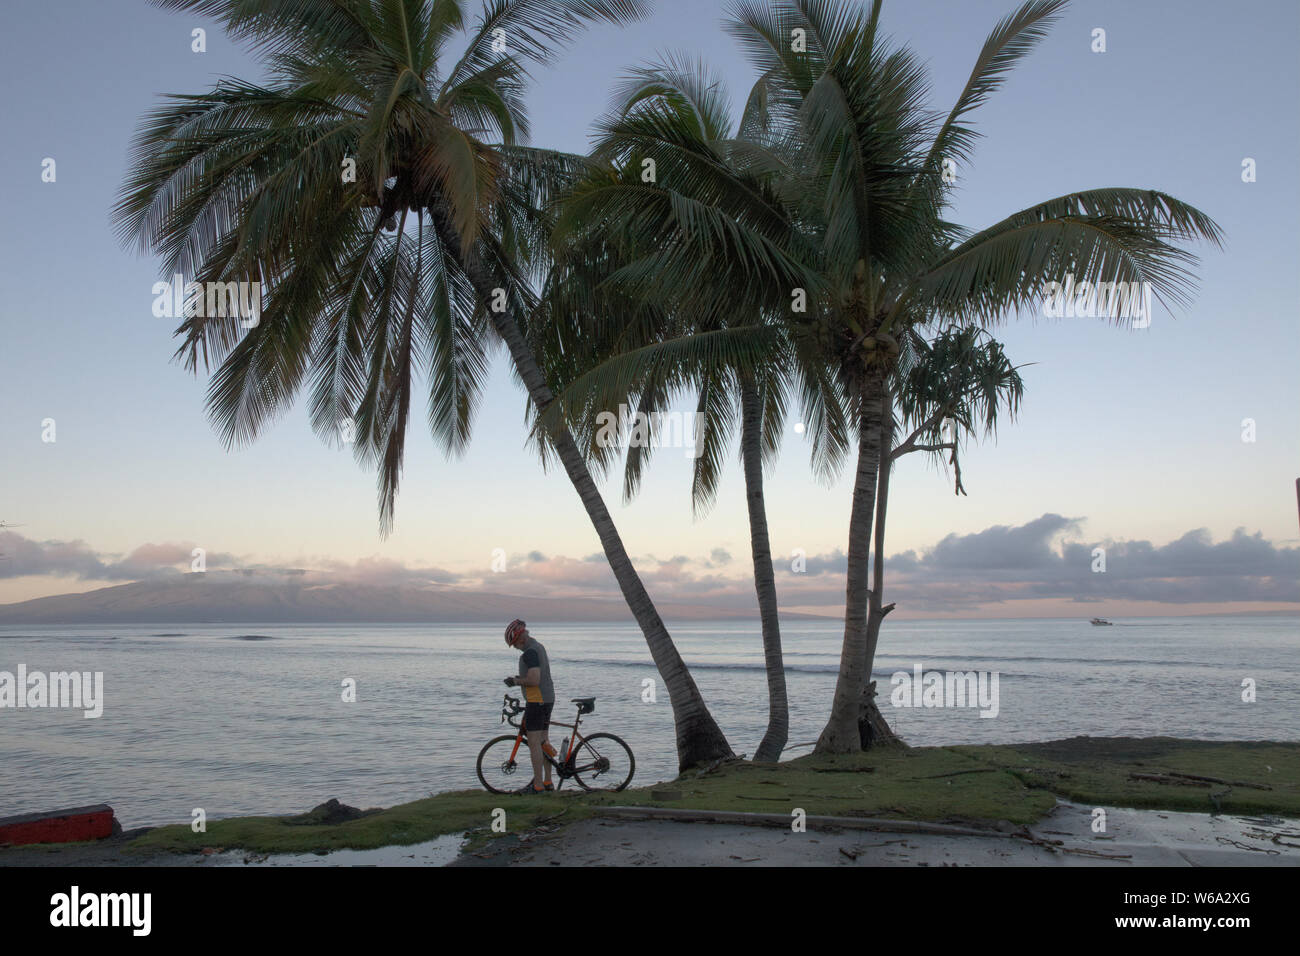 Temprano por la mañana con una persona irreconocible en una bicicleta en la isla tropical de Maui. Foto de stock